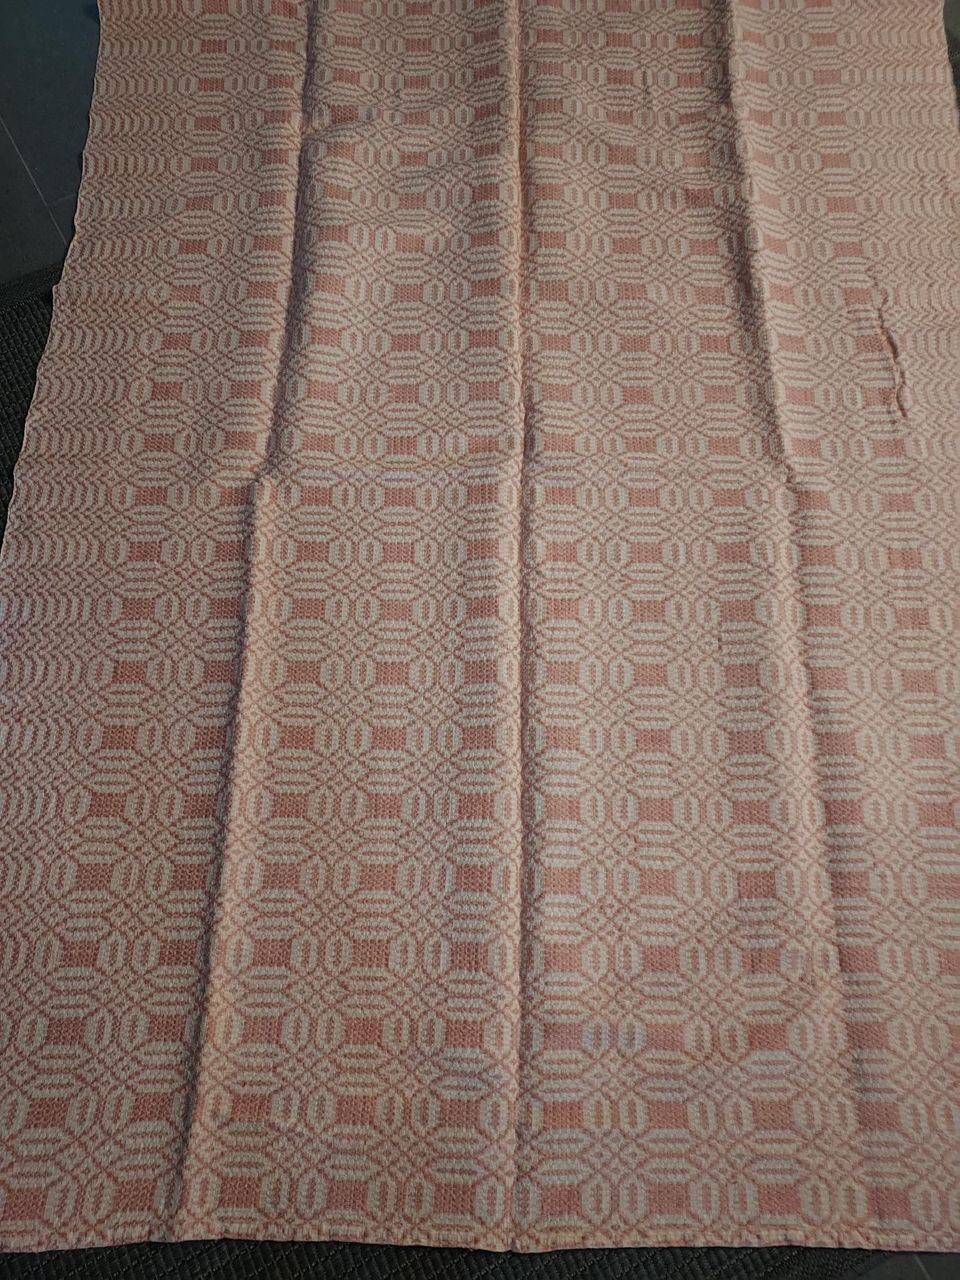 Käyttämätön pellavaliina, koko 180 x 136 cm